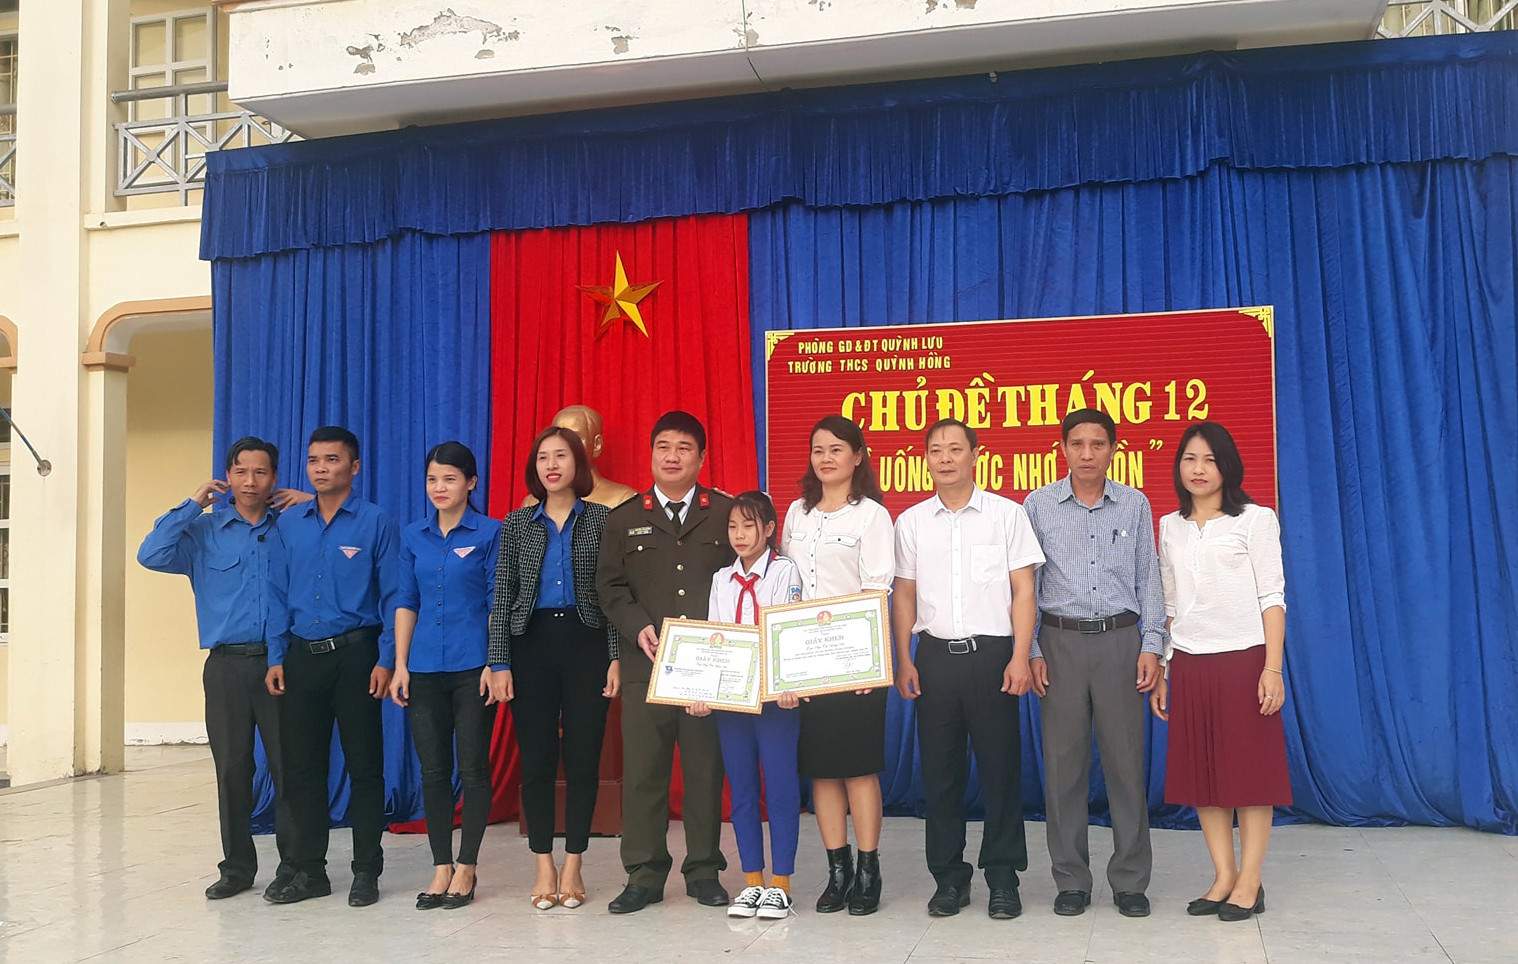 Huyện đoàn và ban giám hiệu nhà trường trao giấy khen cho em Ngô Thị Hồng Hà. Ảnh: PV.